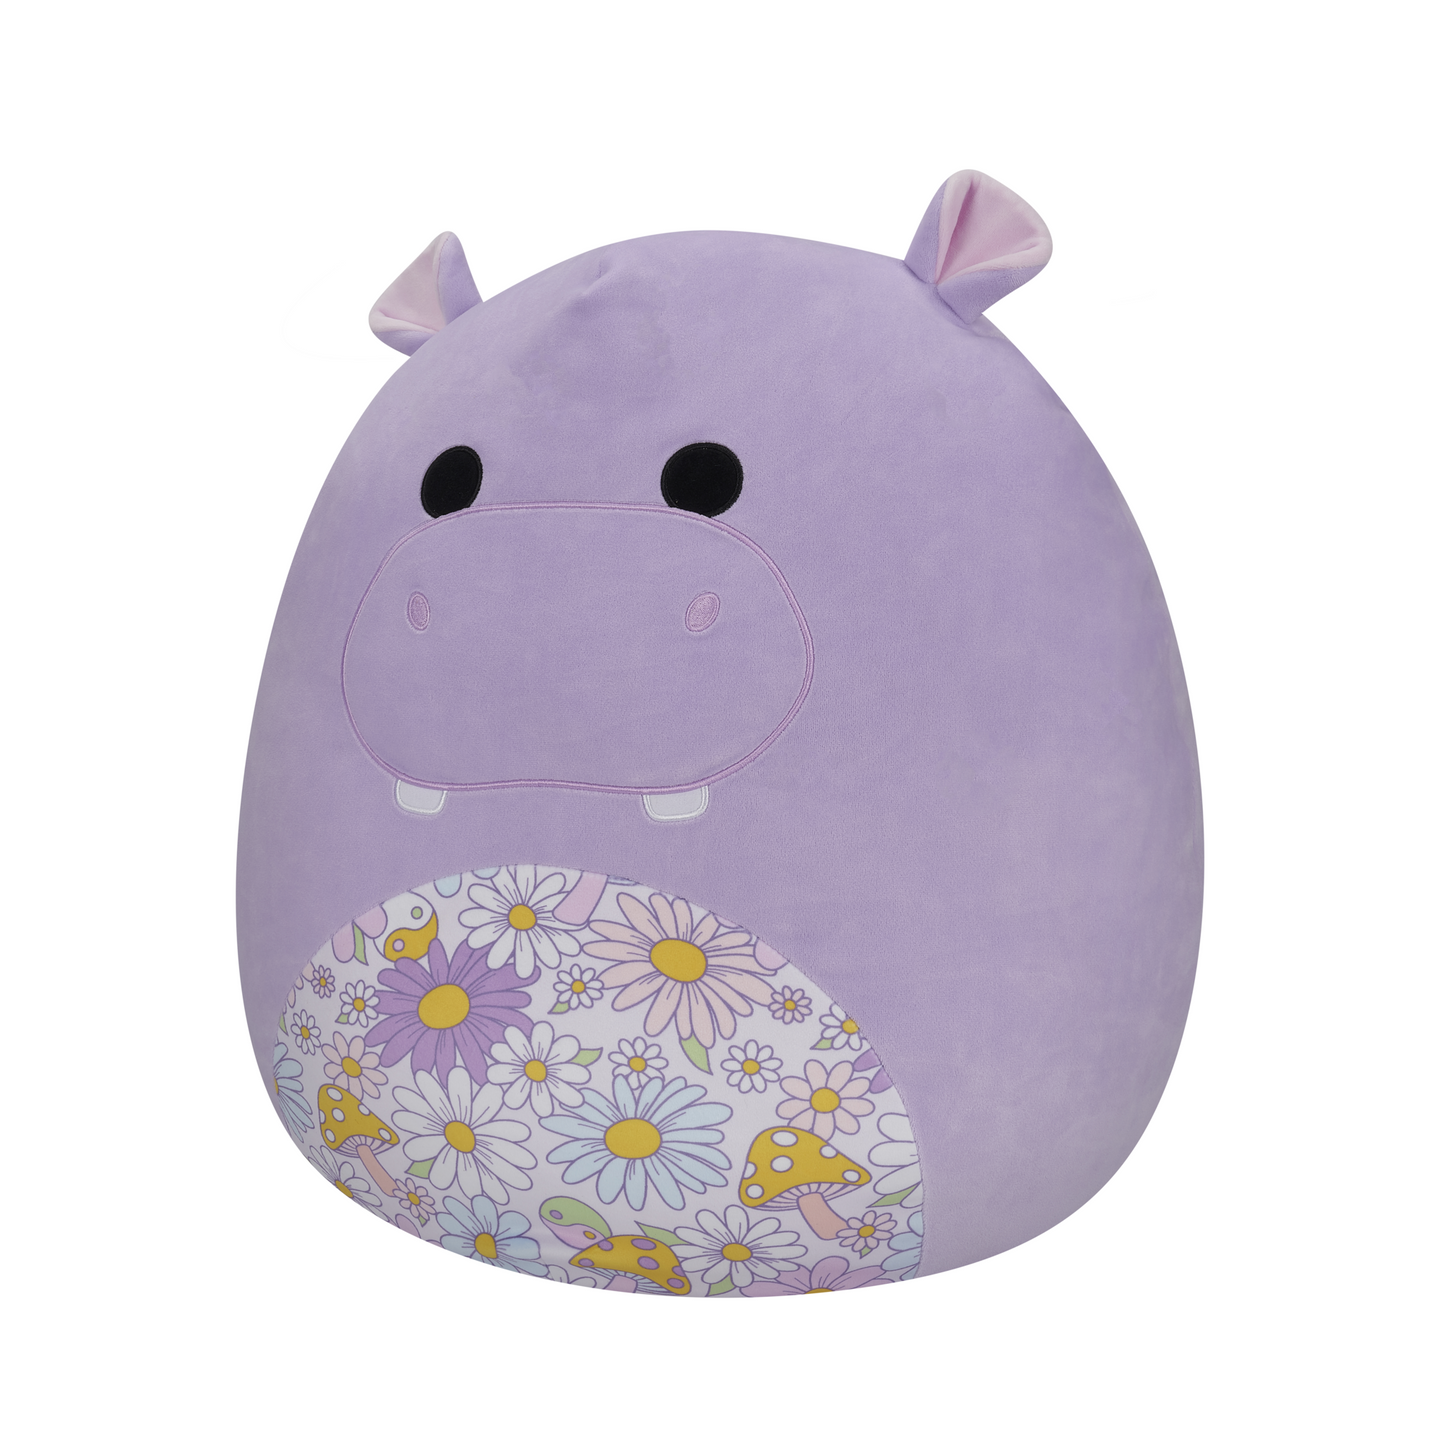 Hanna The Purple Hippo 14" Squishmallows Plush